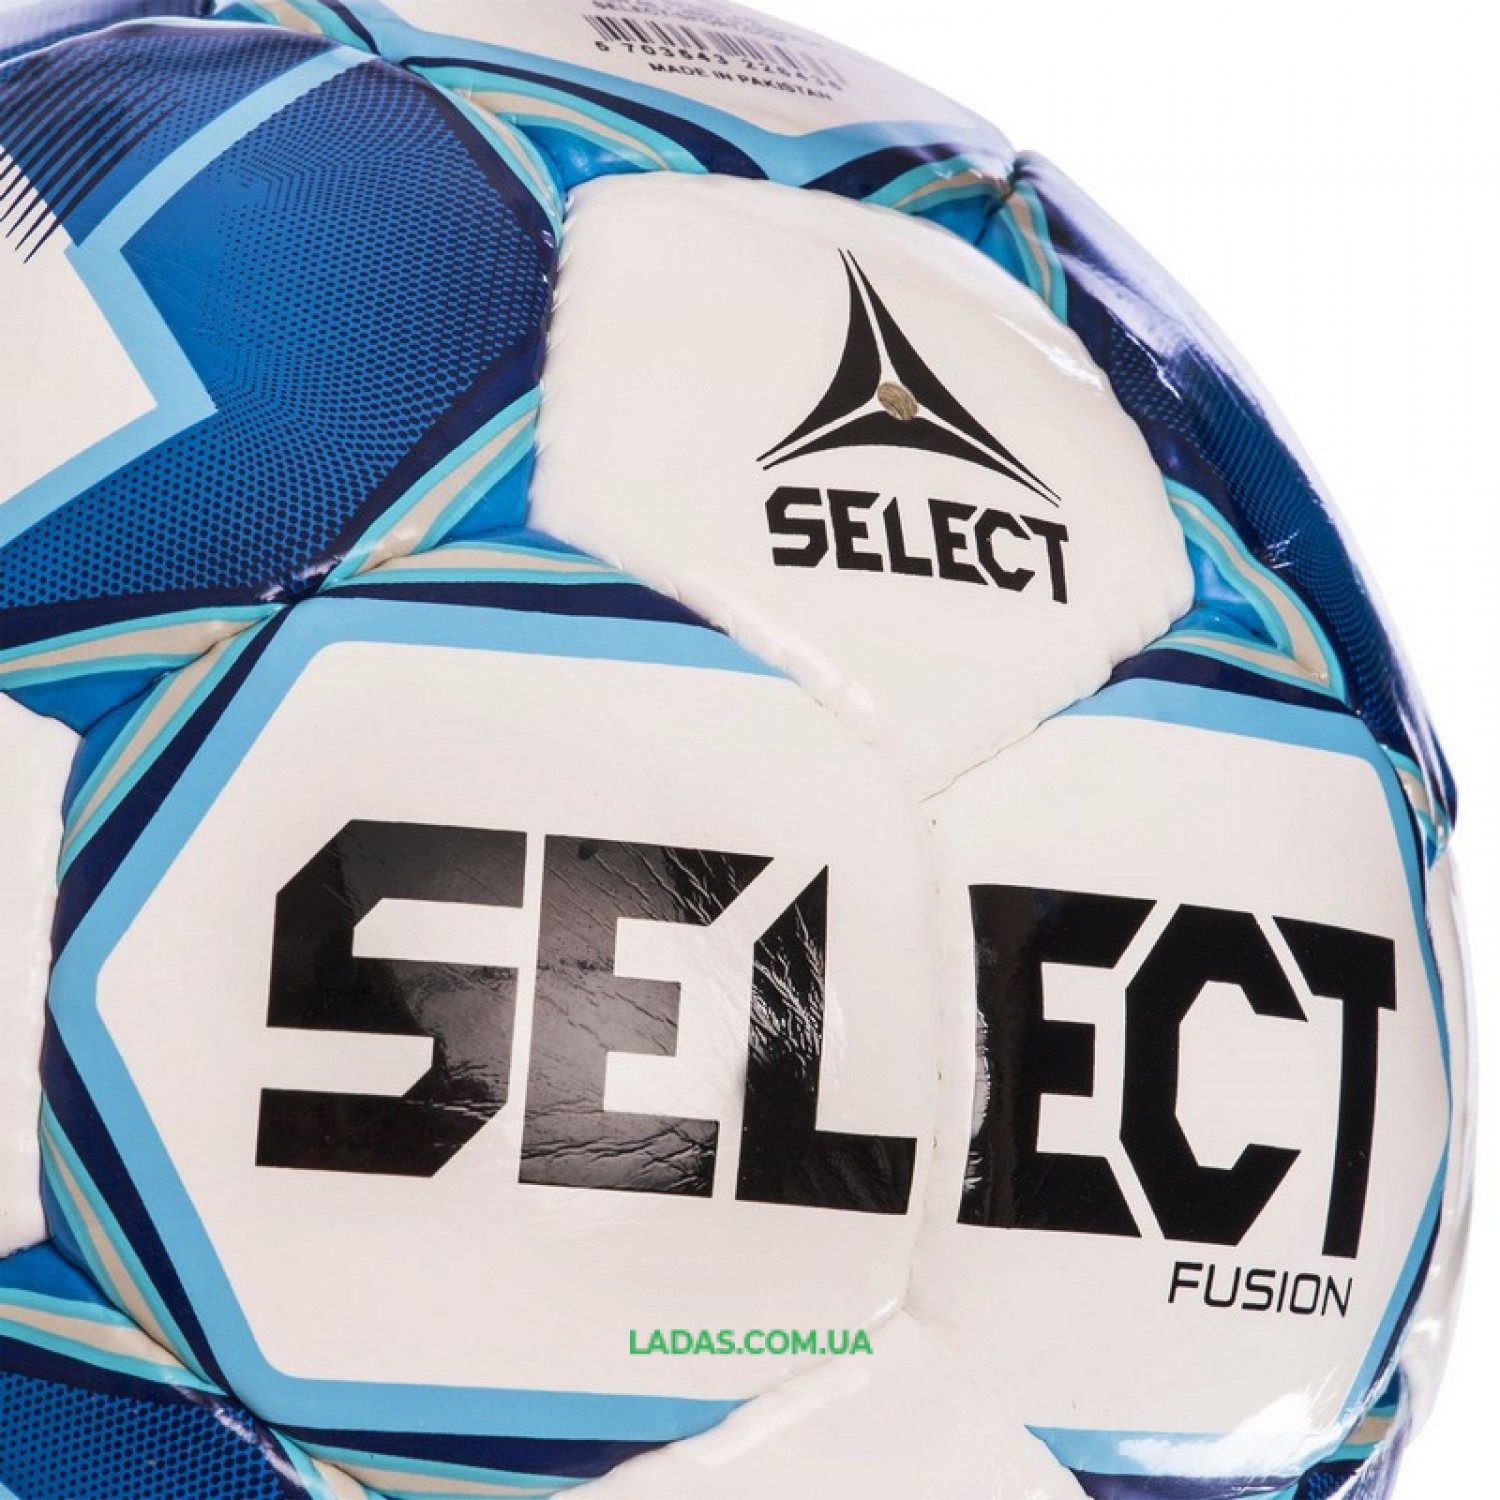 Мяч футбольный №5 SELECT FUSION IMS (FPUS 1100, бело-голубой)